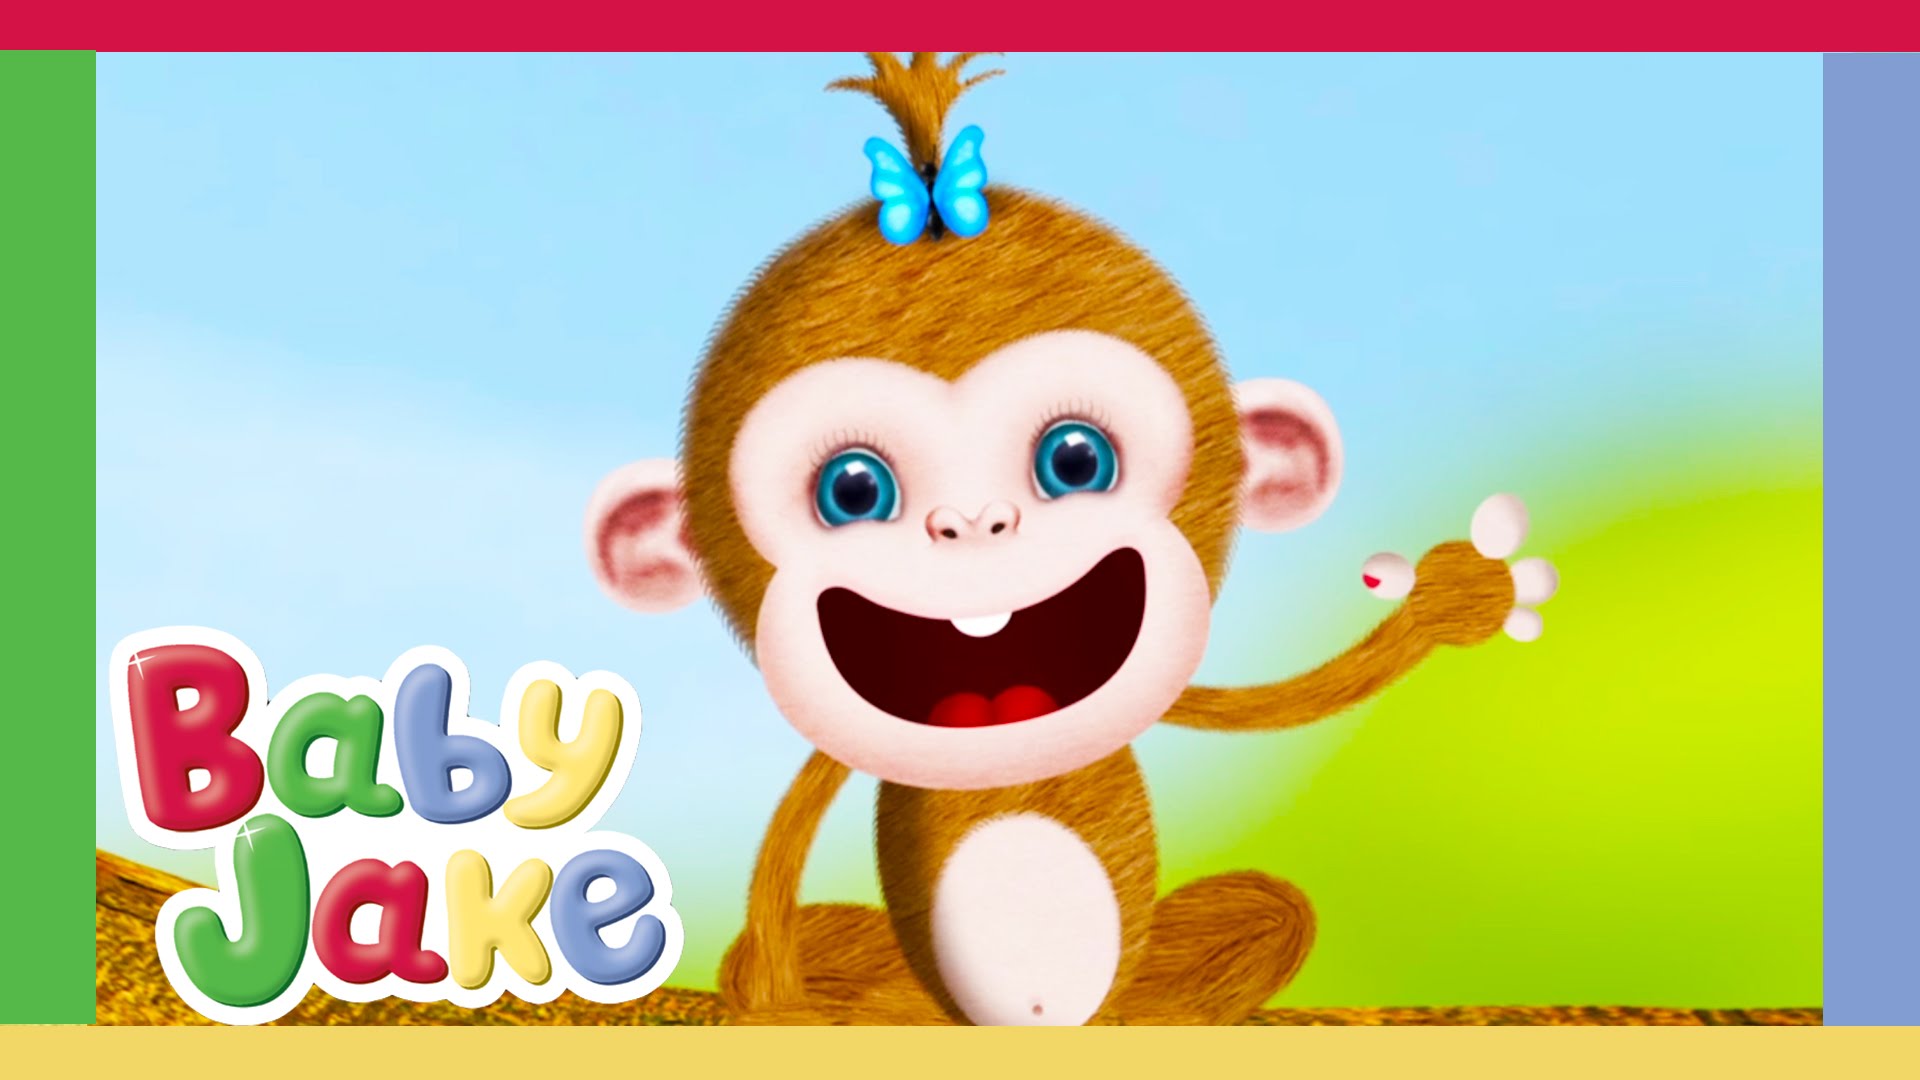 Baby Jake - Sydney The Monkey Special (Brand New) - YouTube